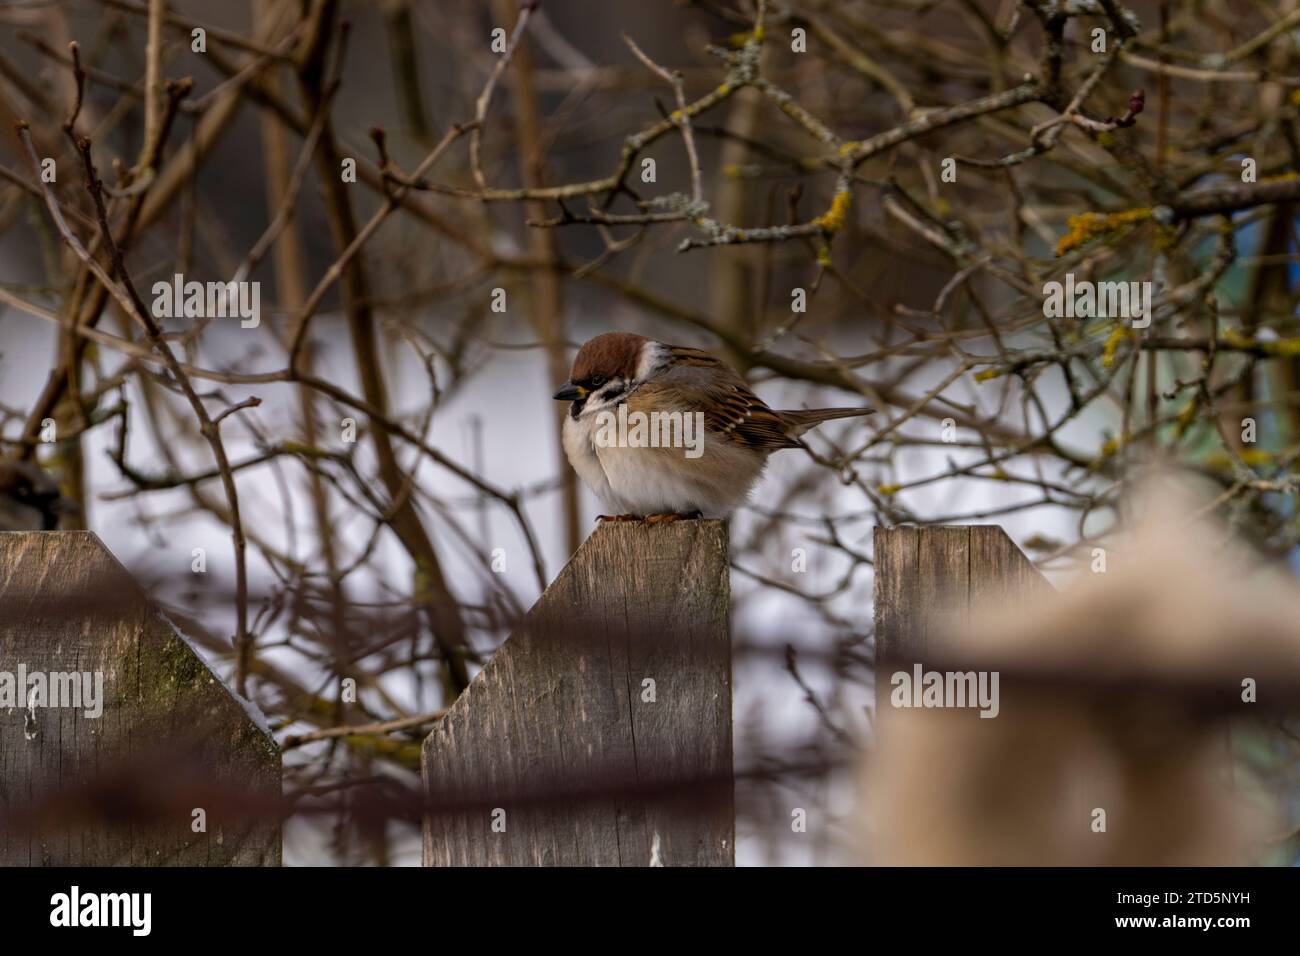 Passer montanus Family Passeridae Genus Passer Eurasian tree sparrow German sparrow Stock Photo